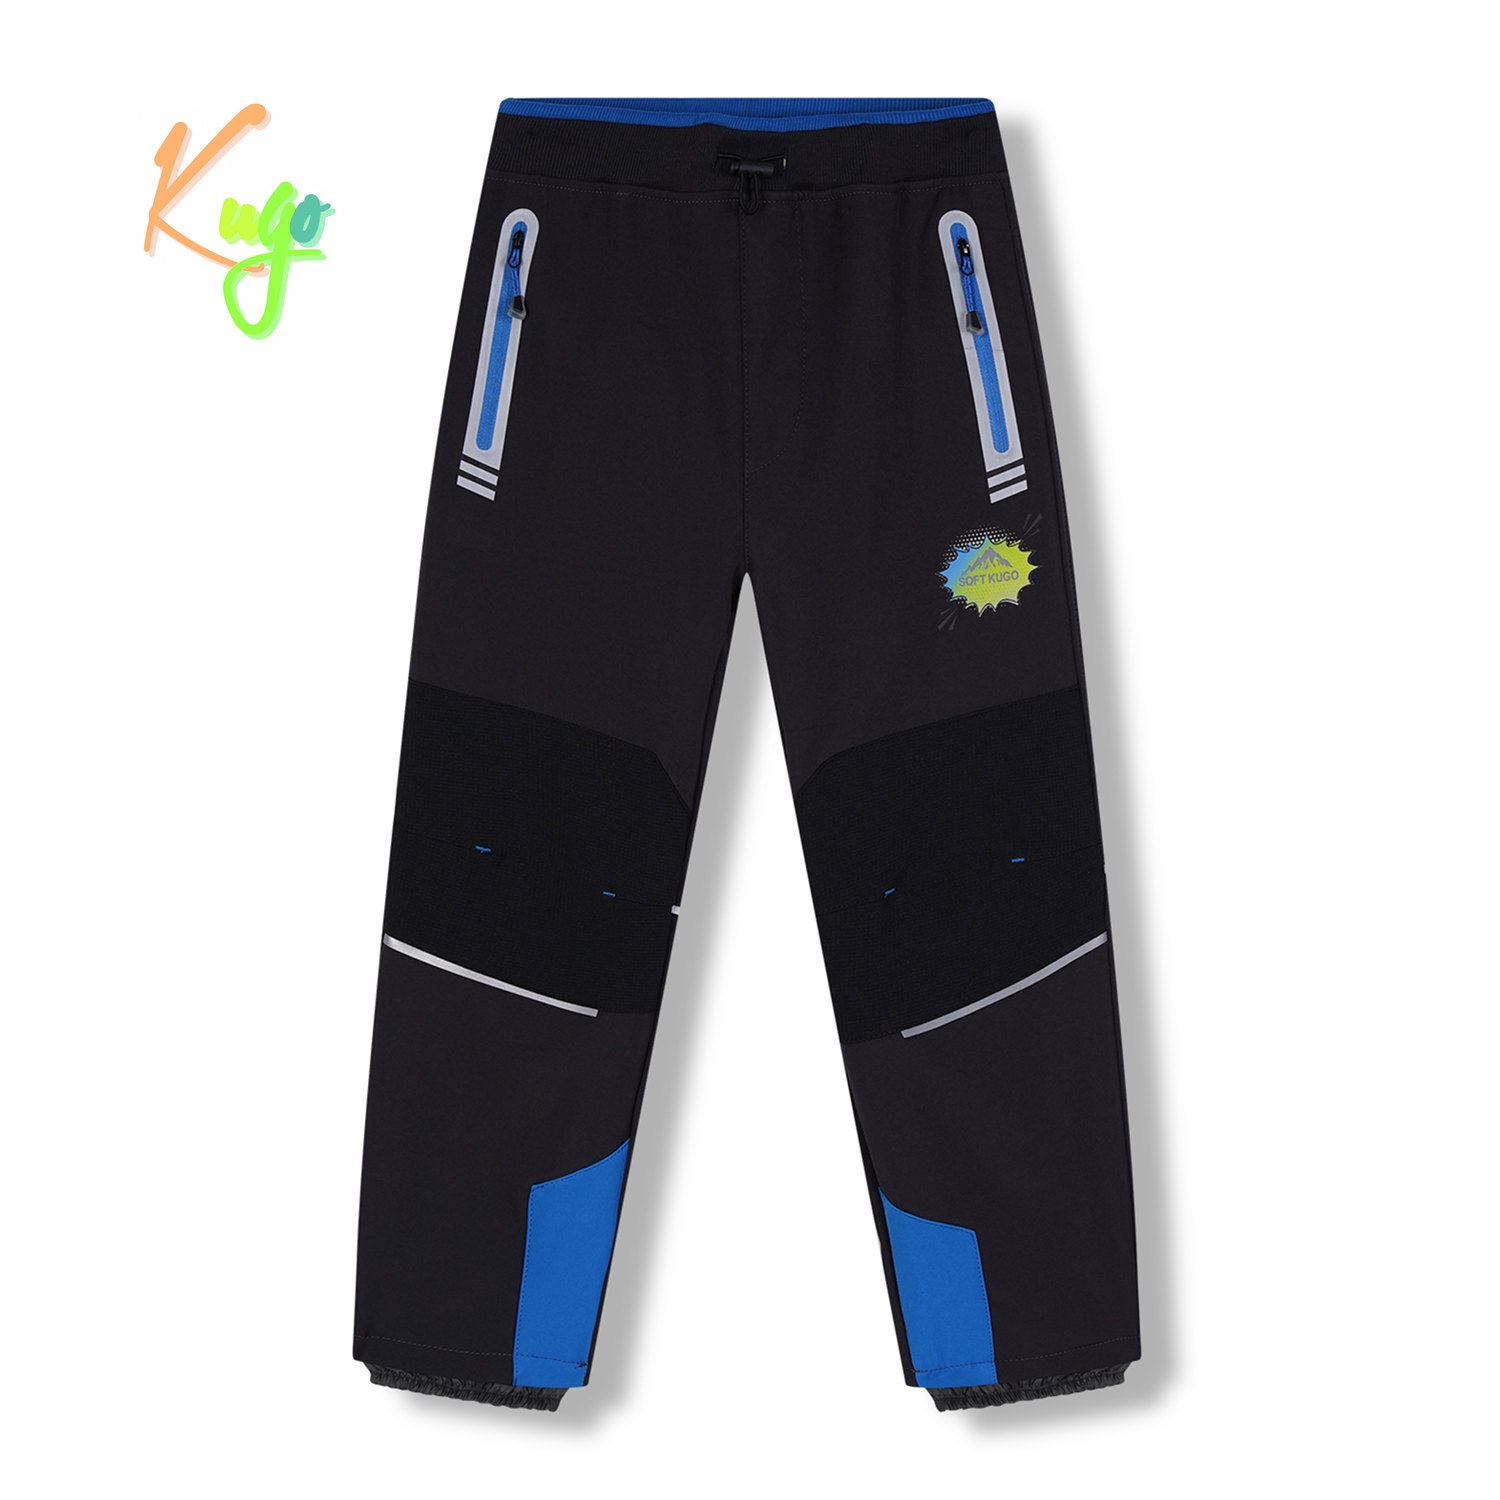 Chlapecké softshellové kalhoty, zateplené - KUGO HK5622, tmavě šedá / modré zipy Barva: Šedá, Velikost: 134